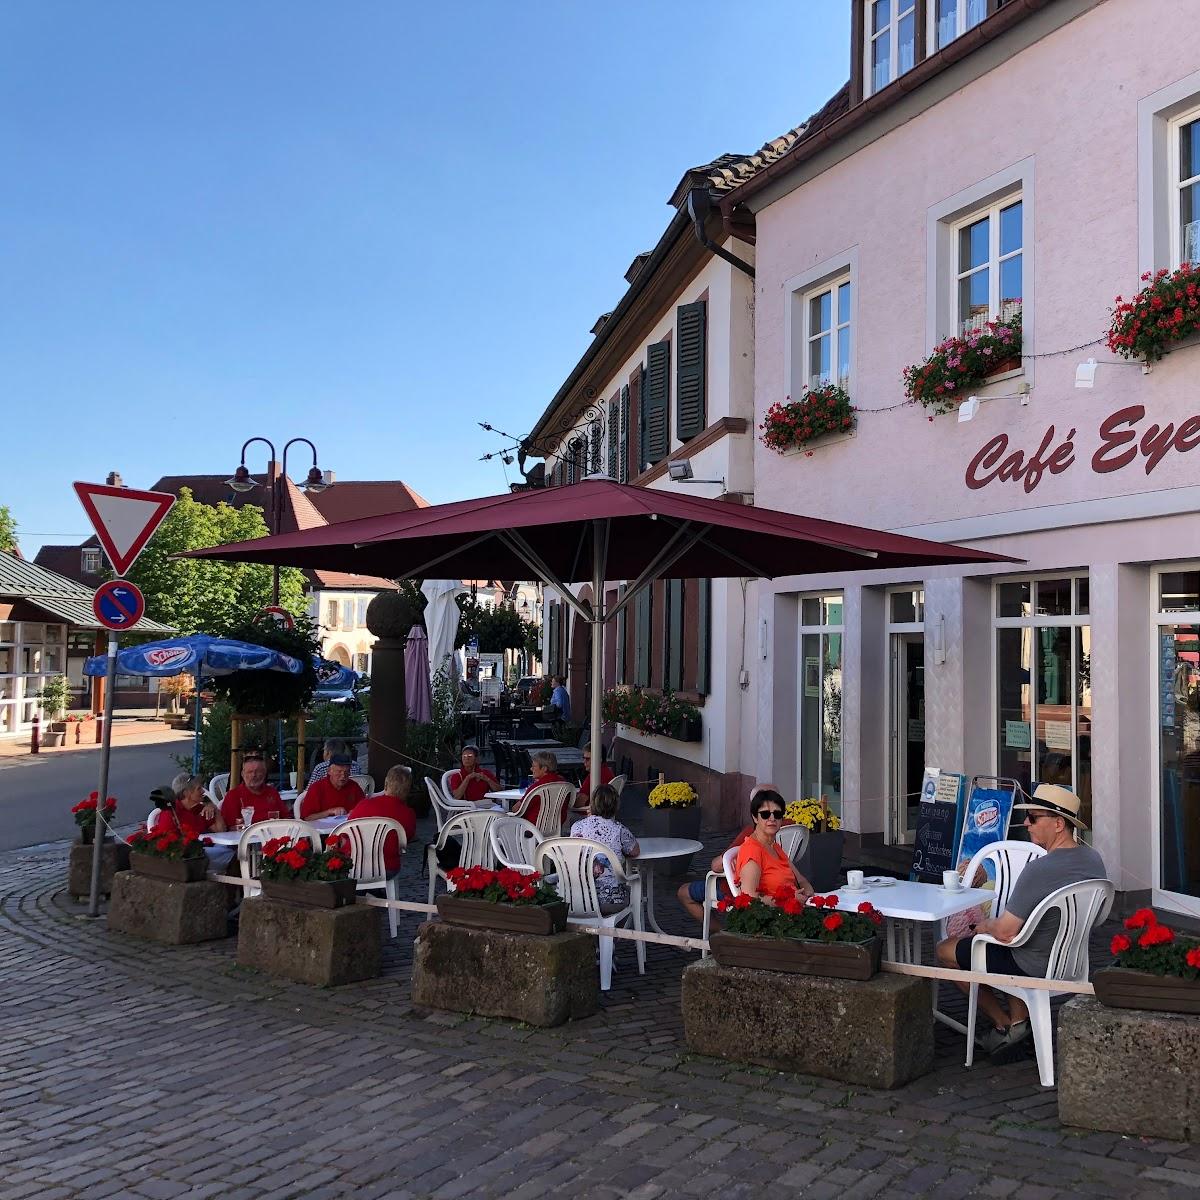 Restaurant "Café Eyer" in Rhodt unter Rietburg